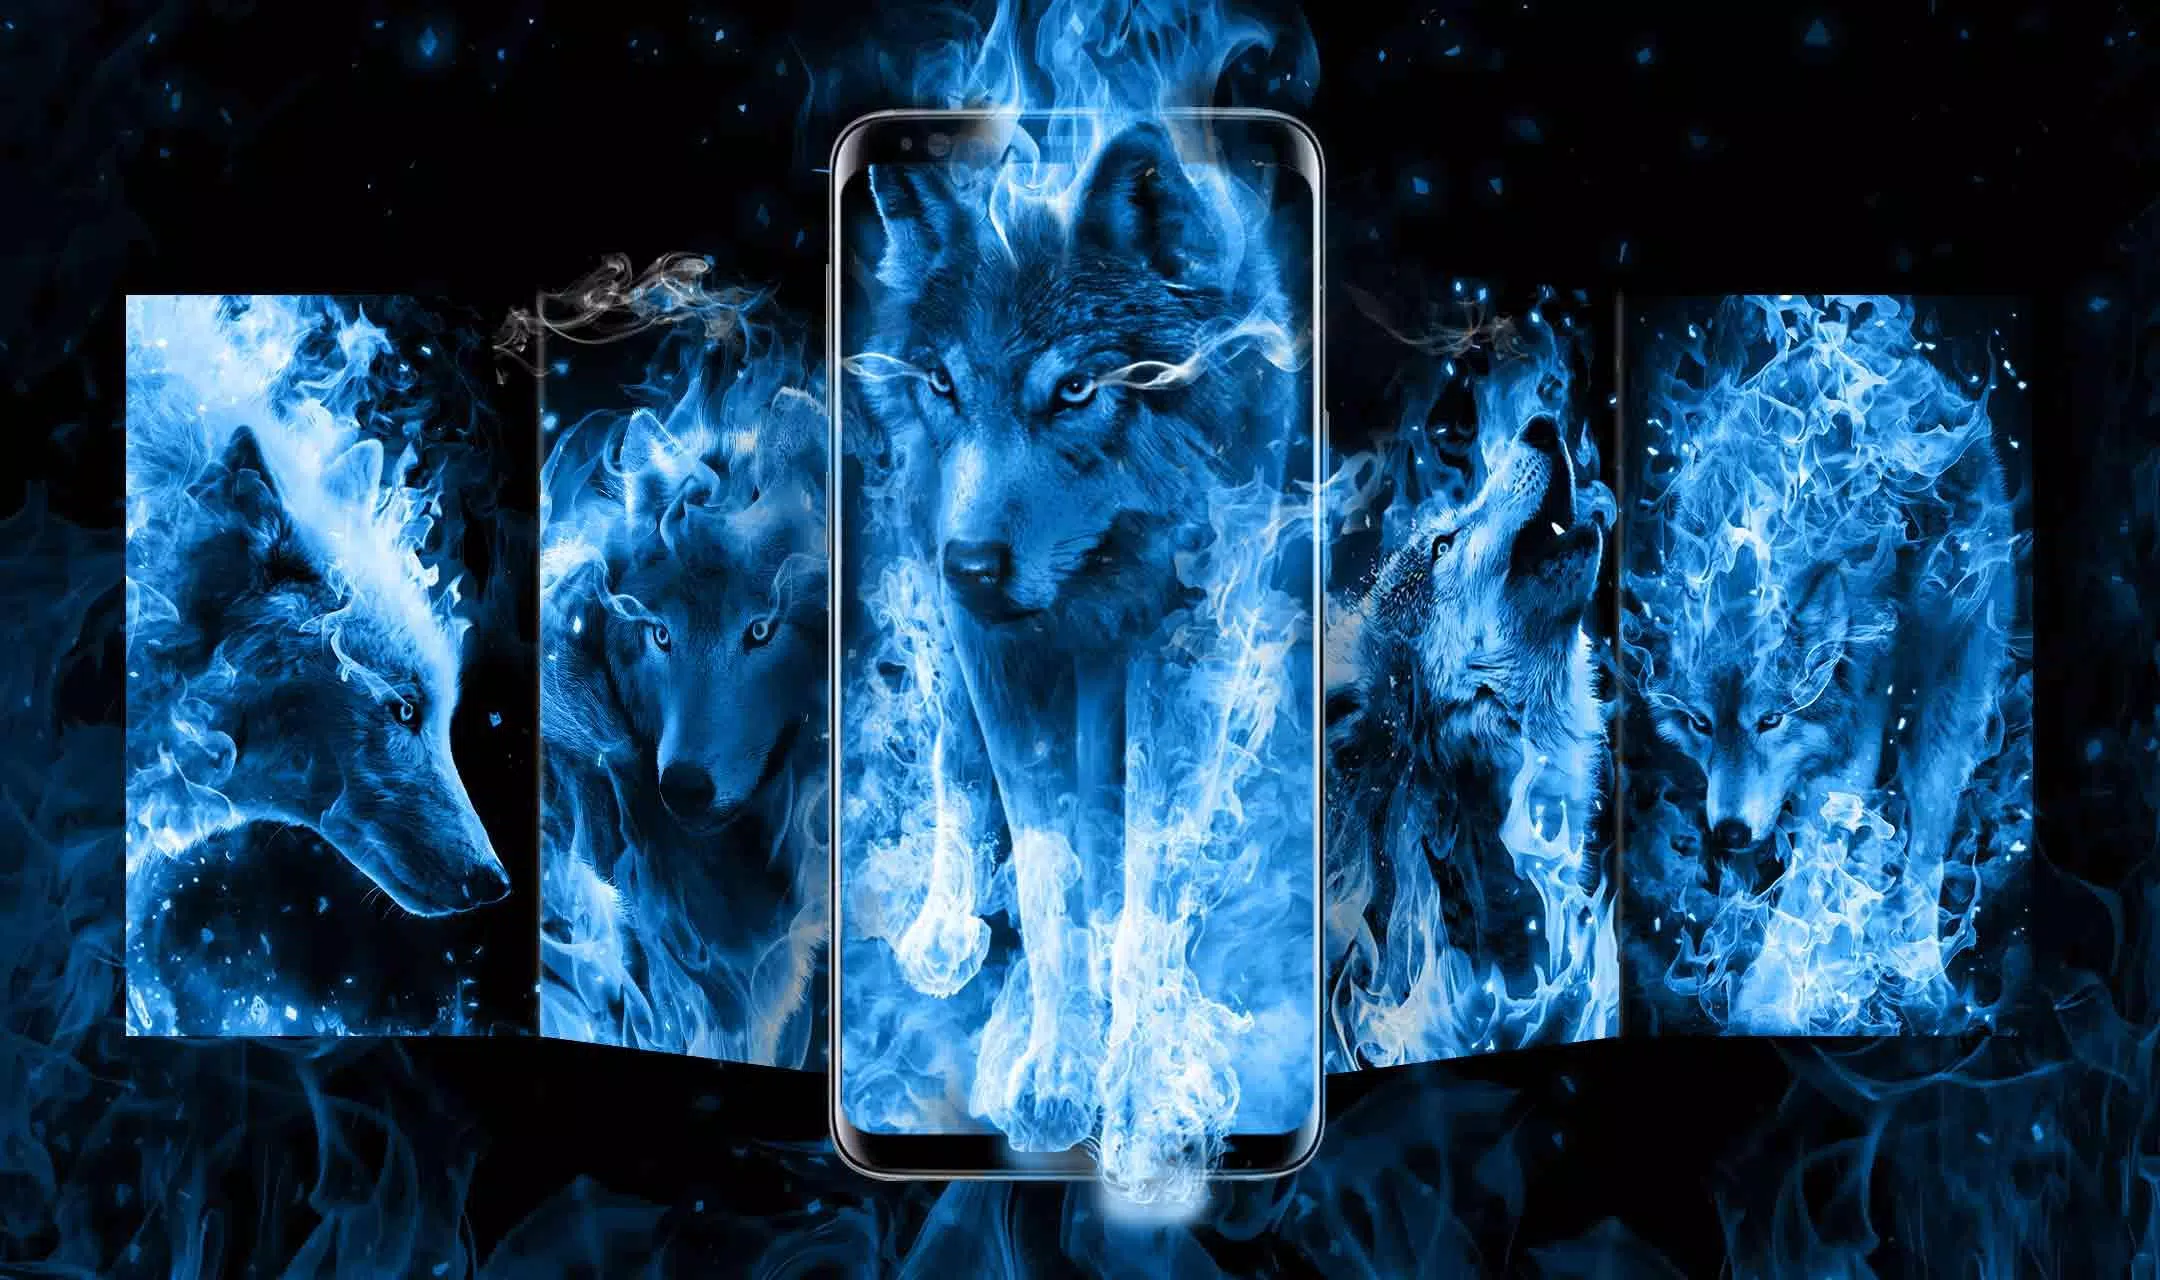 Descarga de APK de Tema azul del lobo de hielo para Android